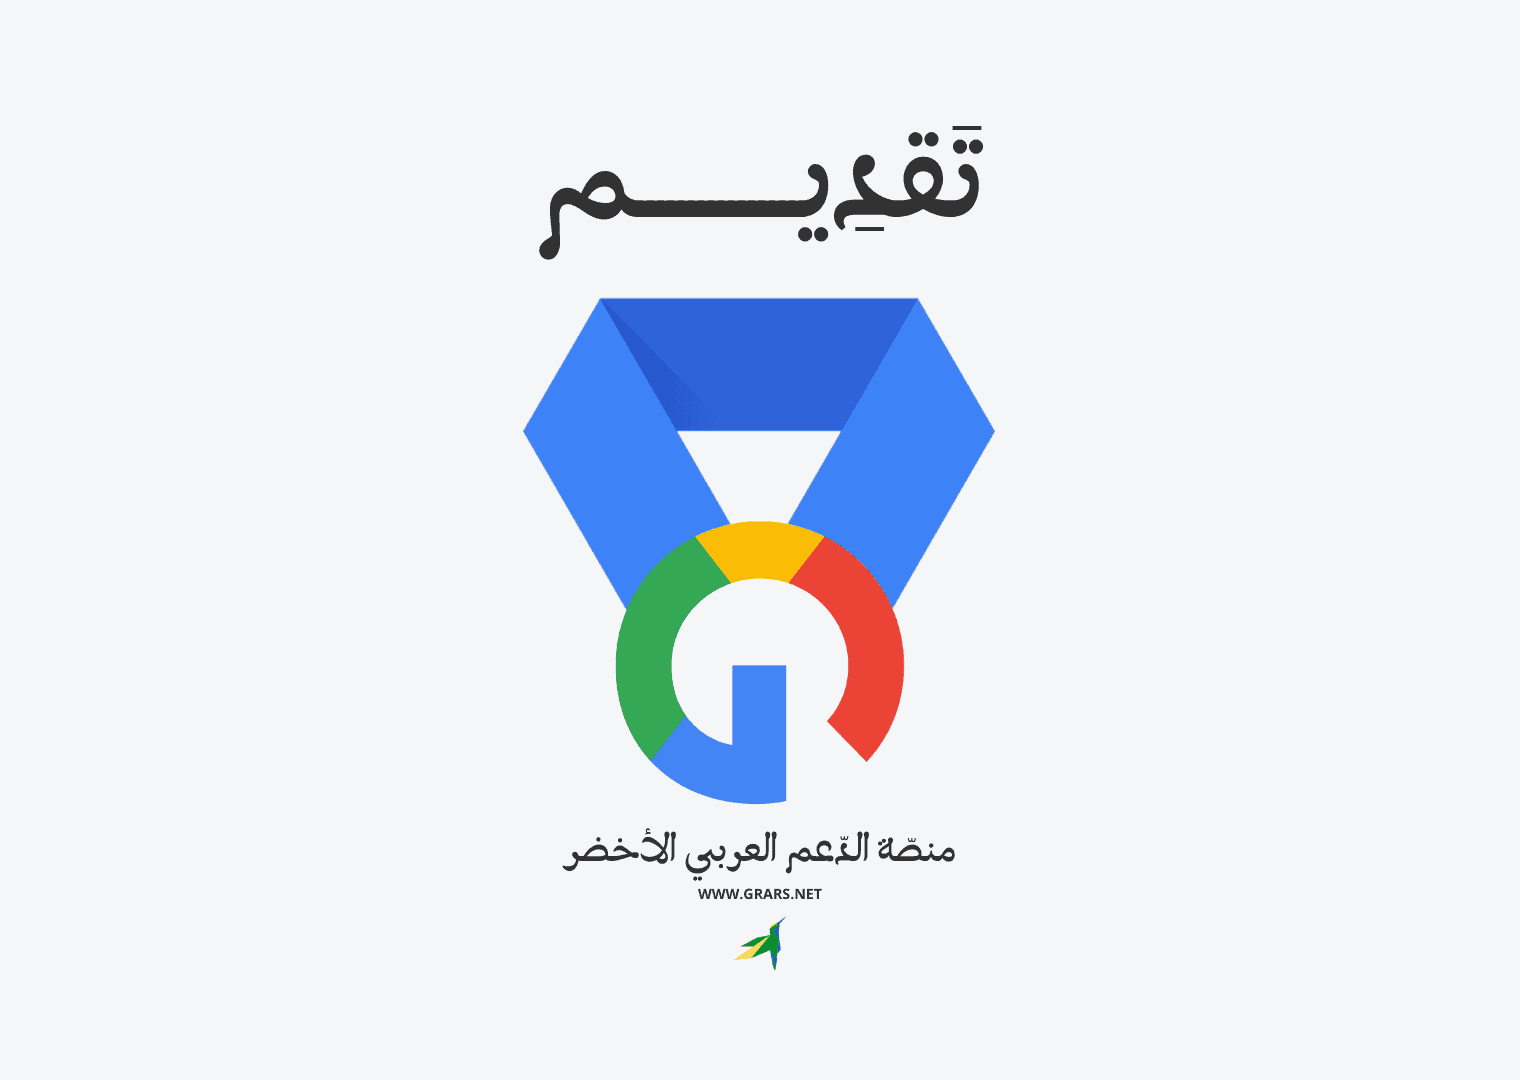 إليك قناة المجتمع العربي لخبراء منتجات جوجل